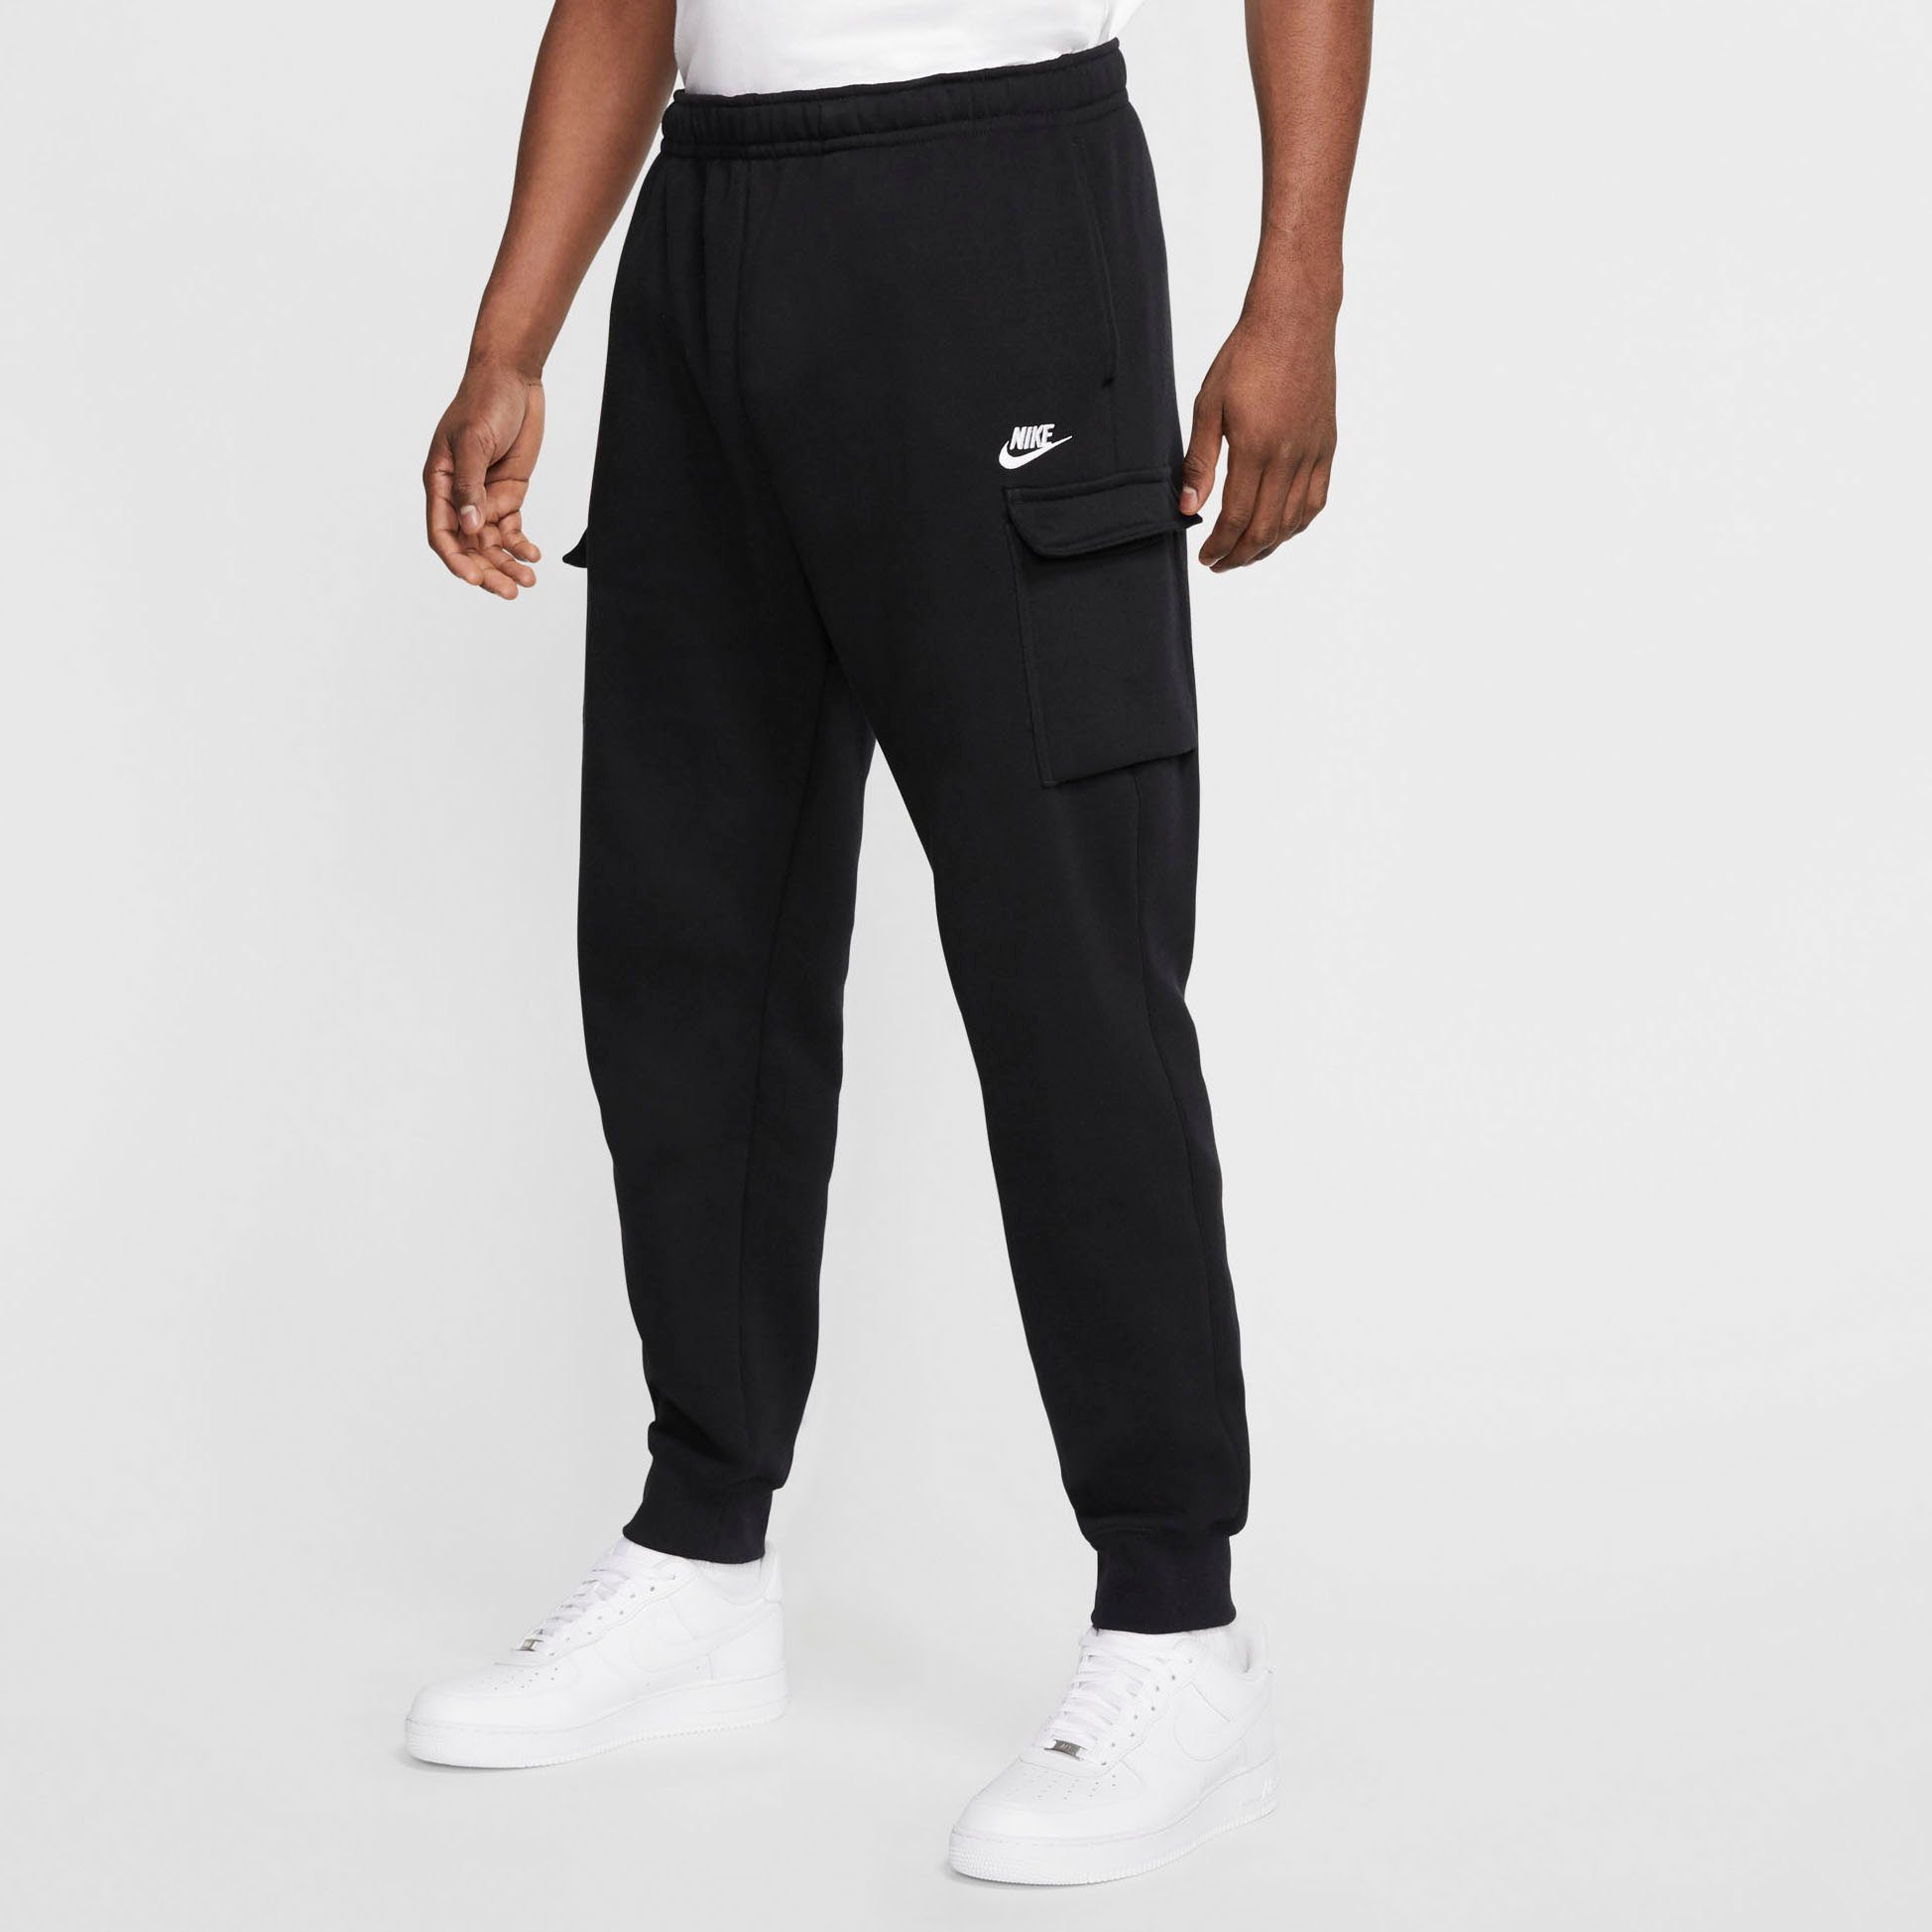 Nike Jogginghosen für Herren kaufen » Nike Jogger | OTTO